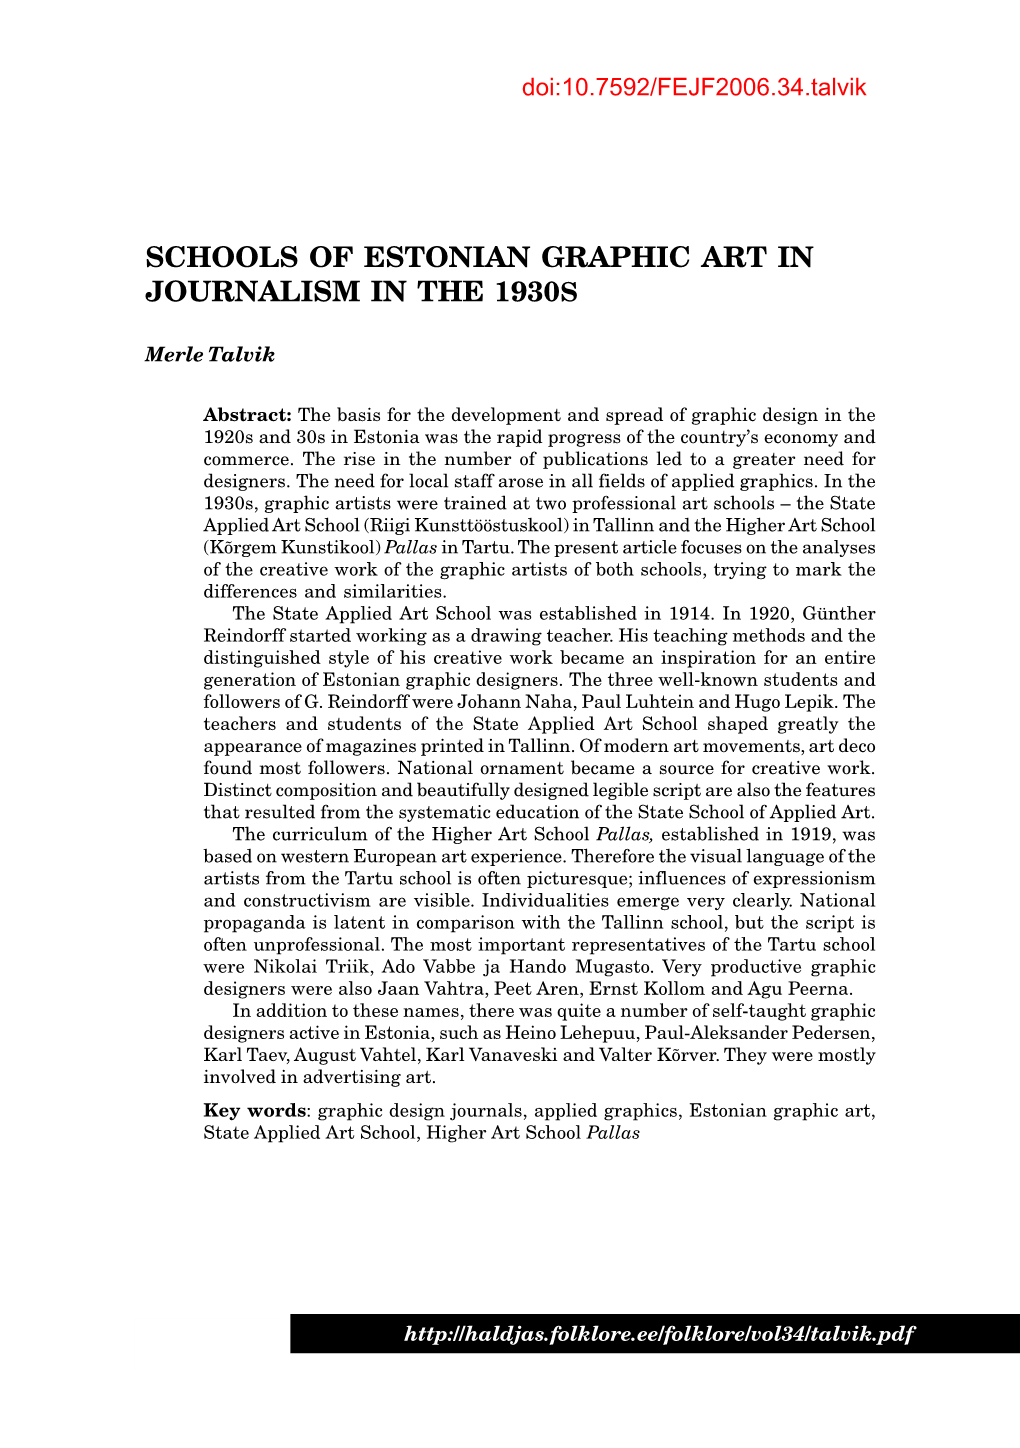 Schools of Estonian Graphic Art in Journalism in the 1930S